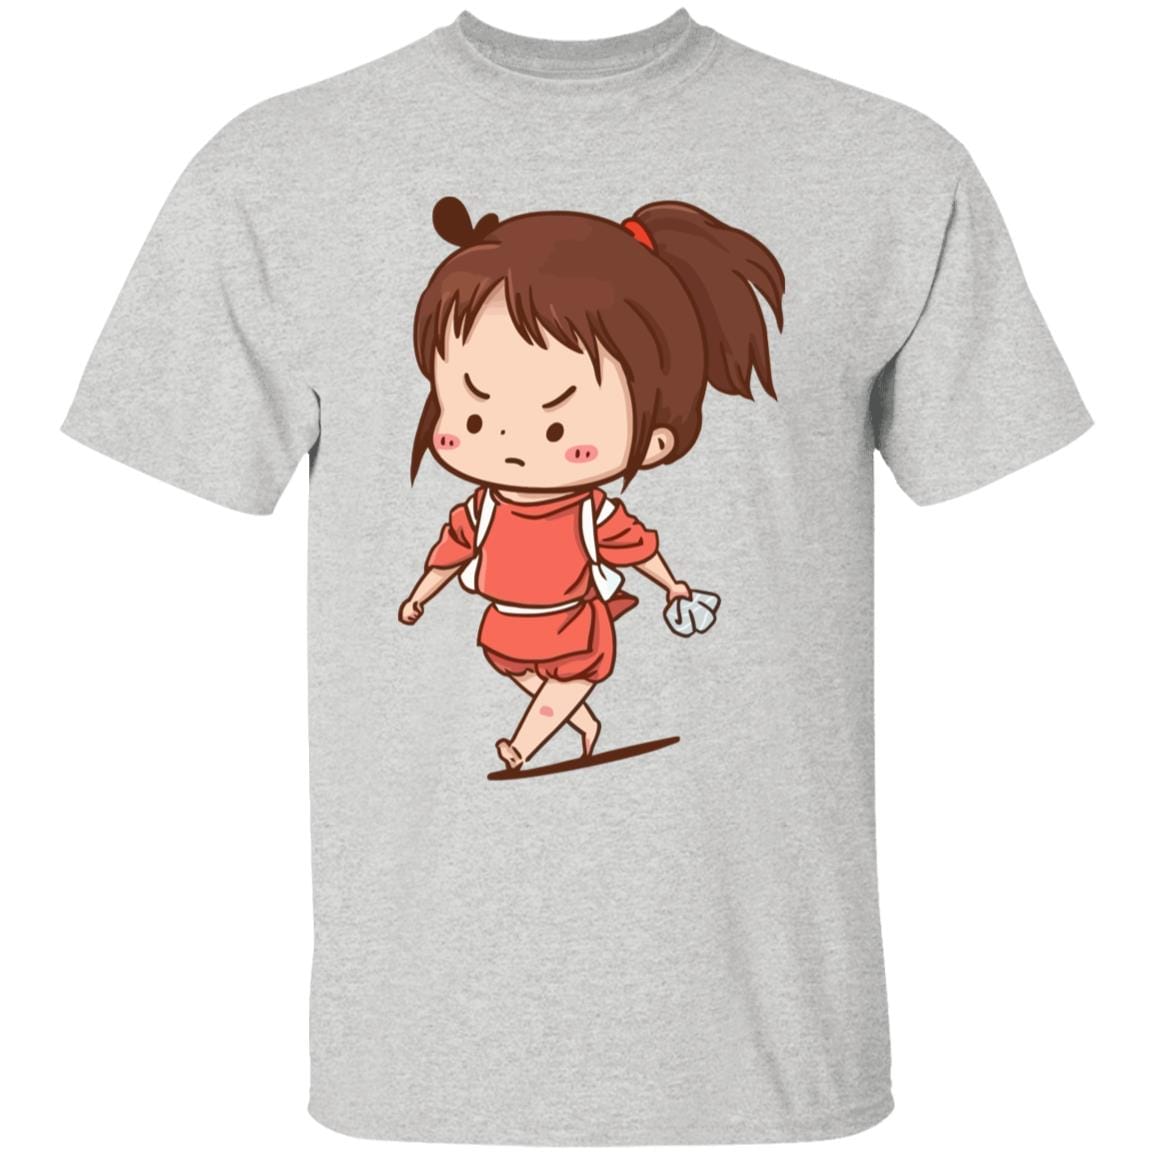 Spirited Away Chihiro Chibi Kid T Shirt